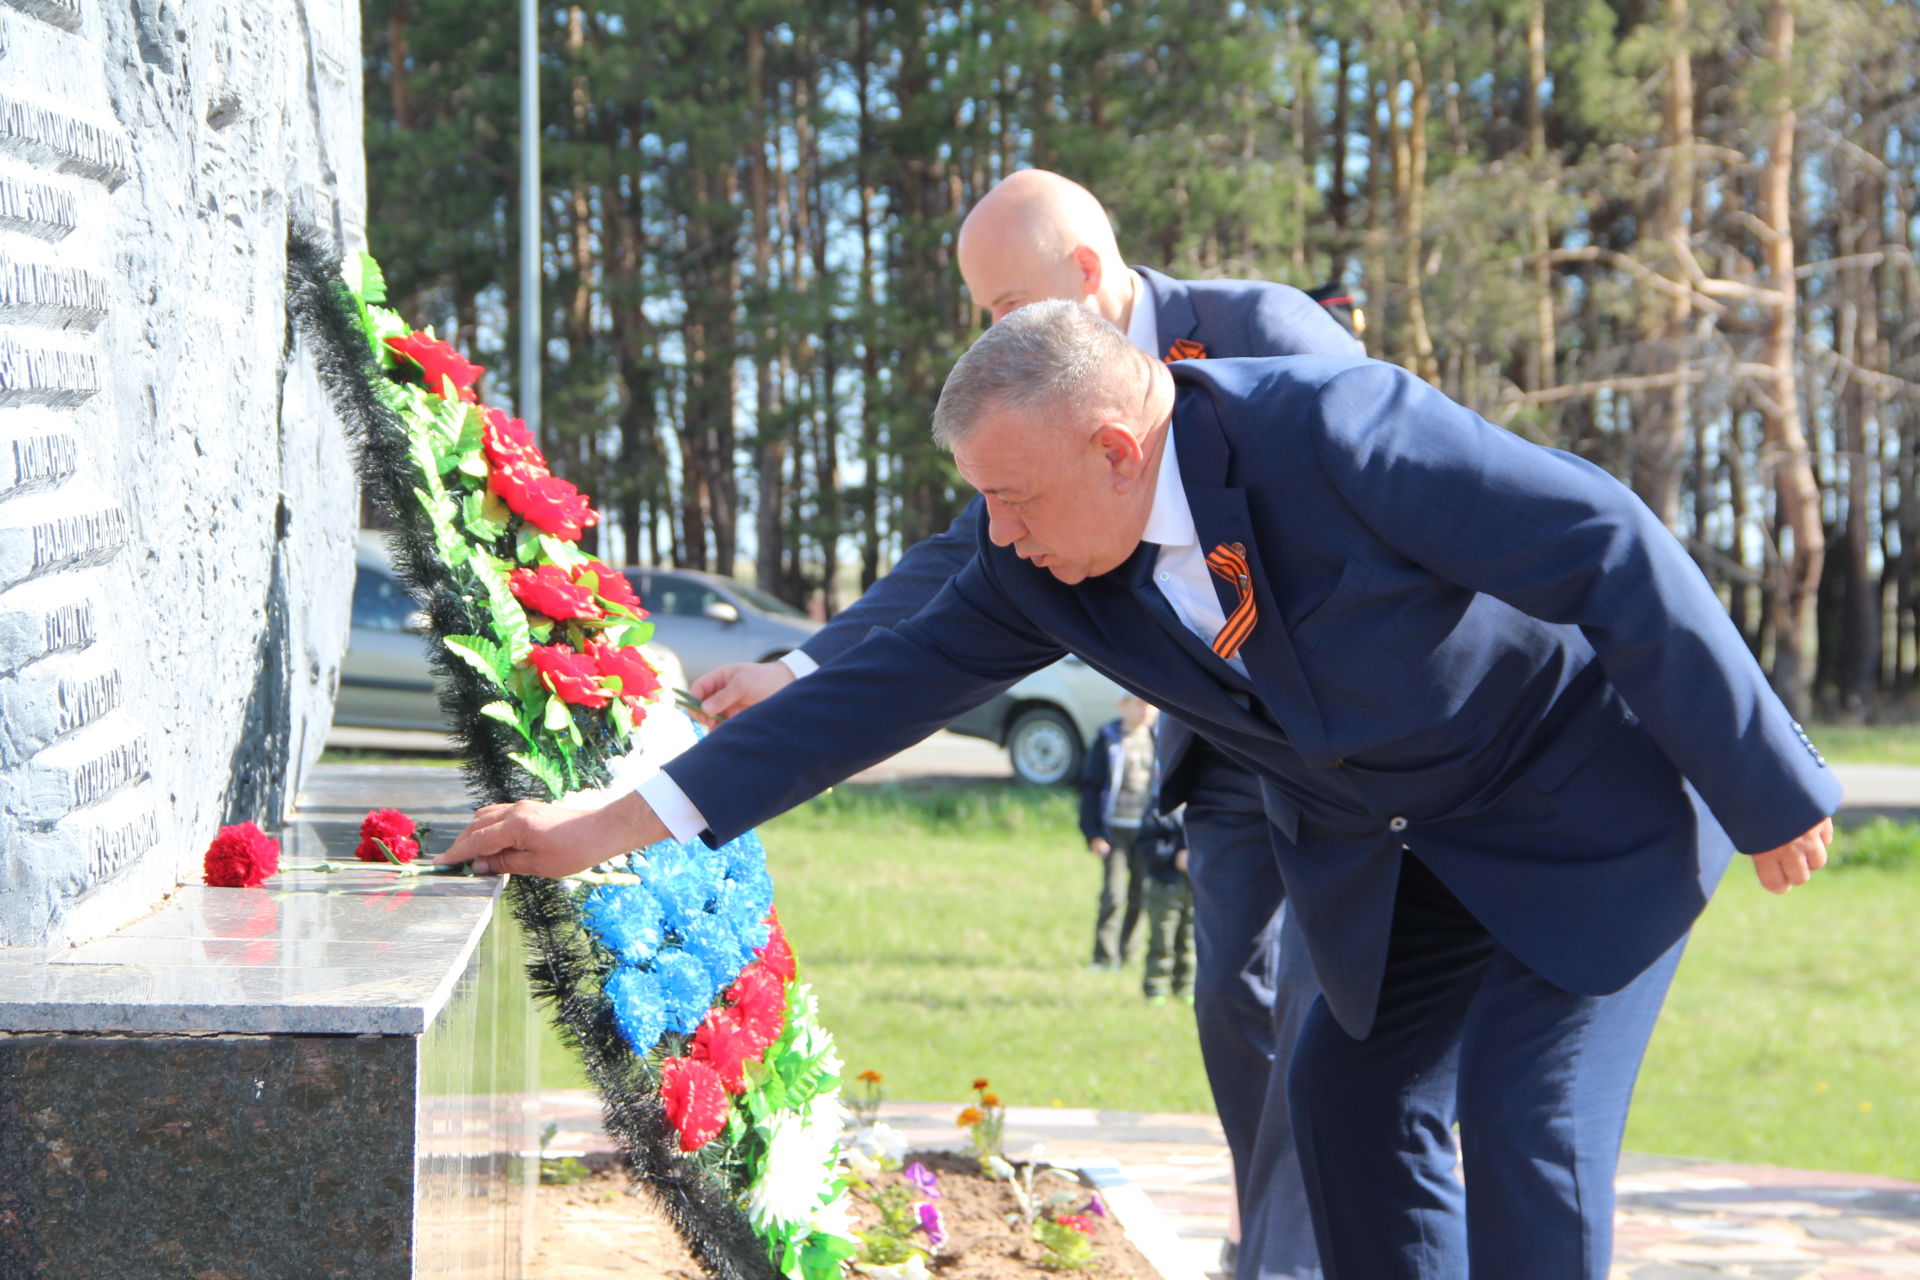 В Болгаре возложили цветы к памятнику Казанскому обводу